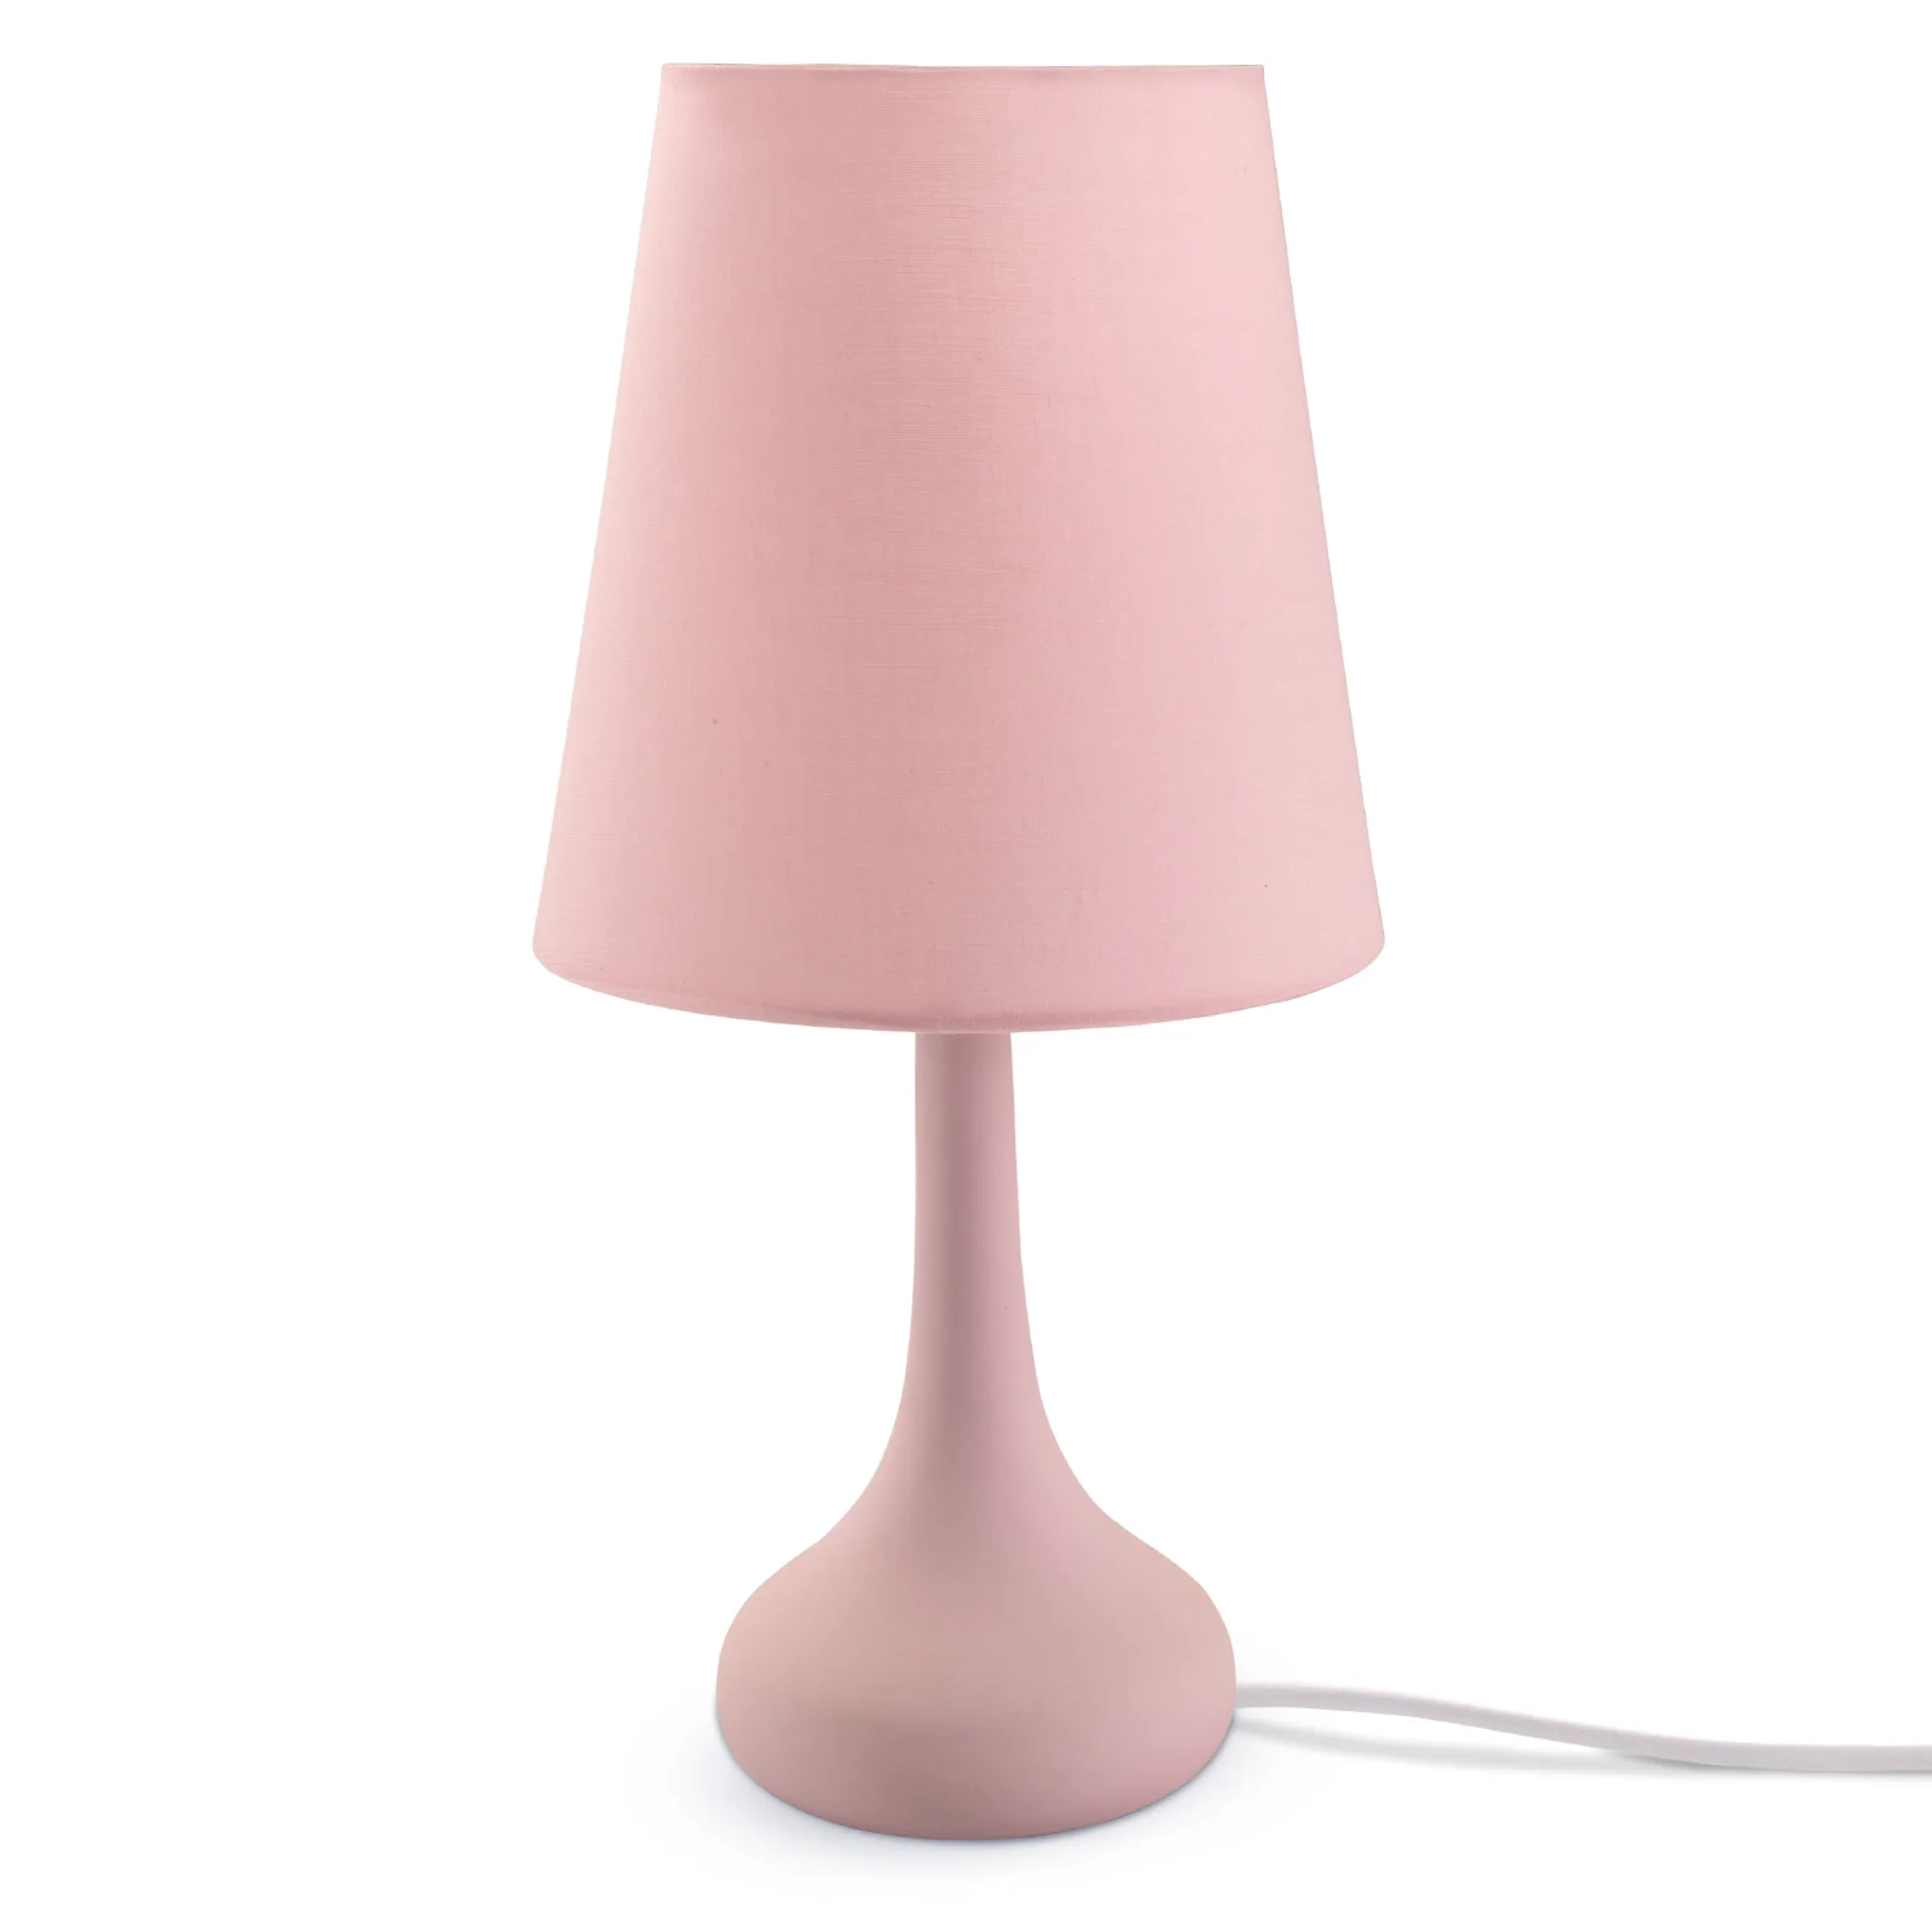 u. E14 Tischleuchte Modern Tischlampe Kinderzimmer Für Wohnzimmer Rosa Farbe Lampe,